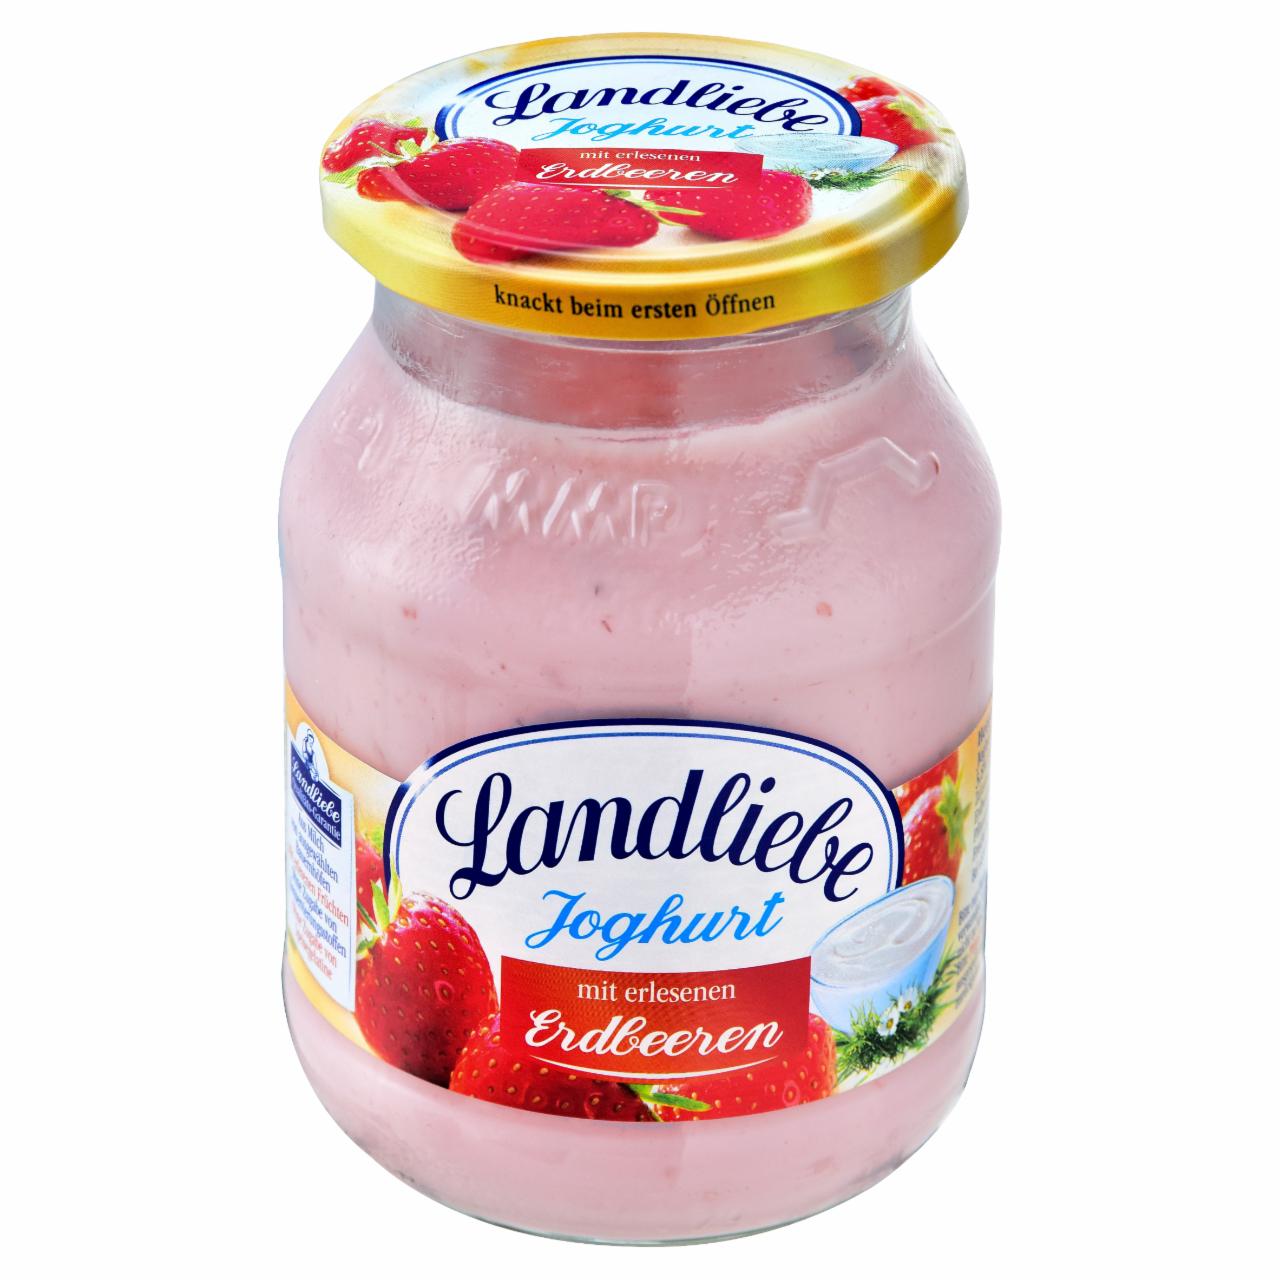 Képek - Landliebe joghurt zamatos eperrel 500 g